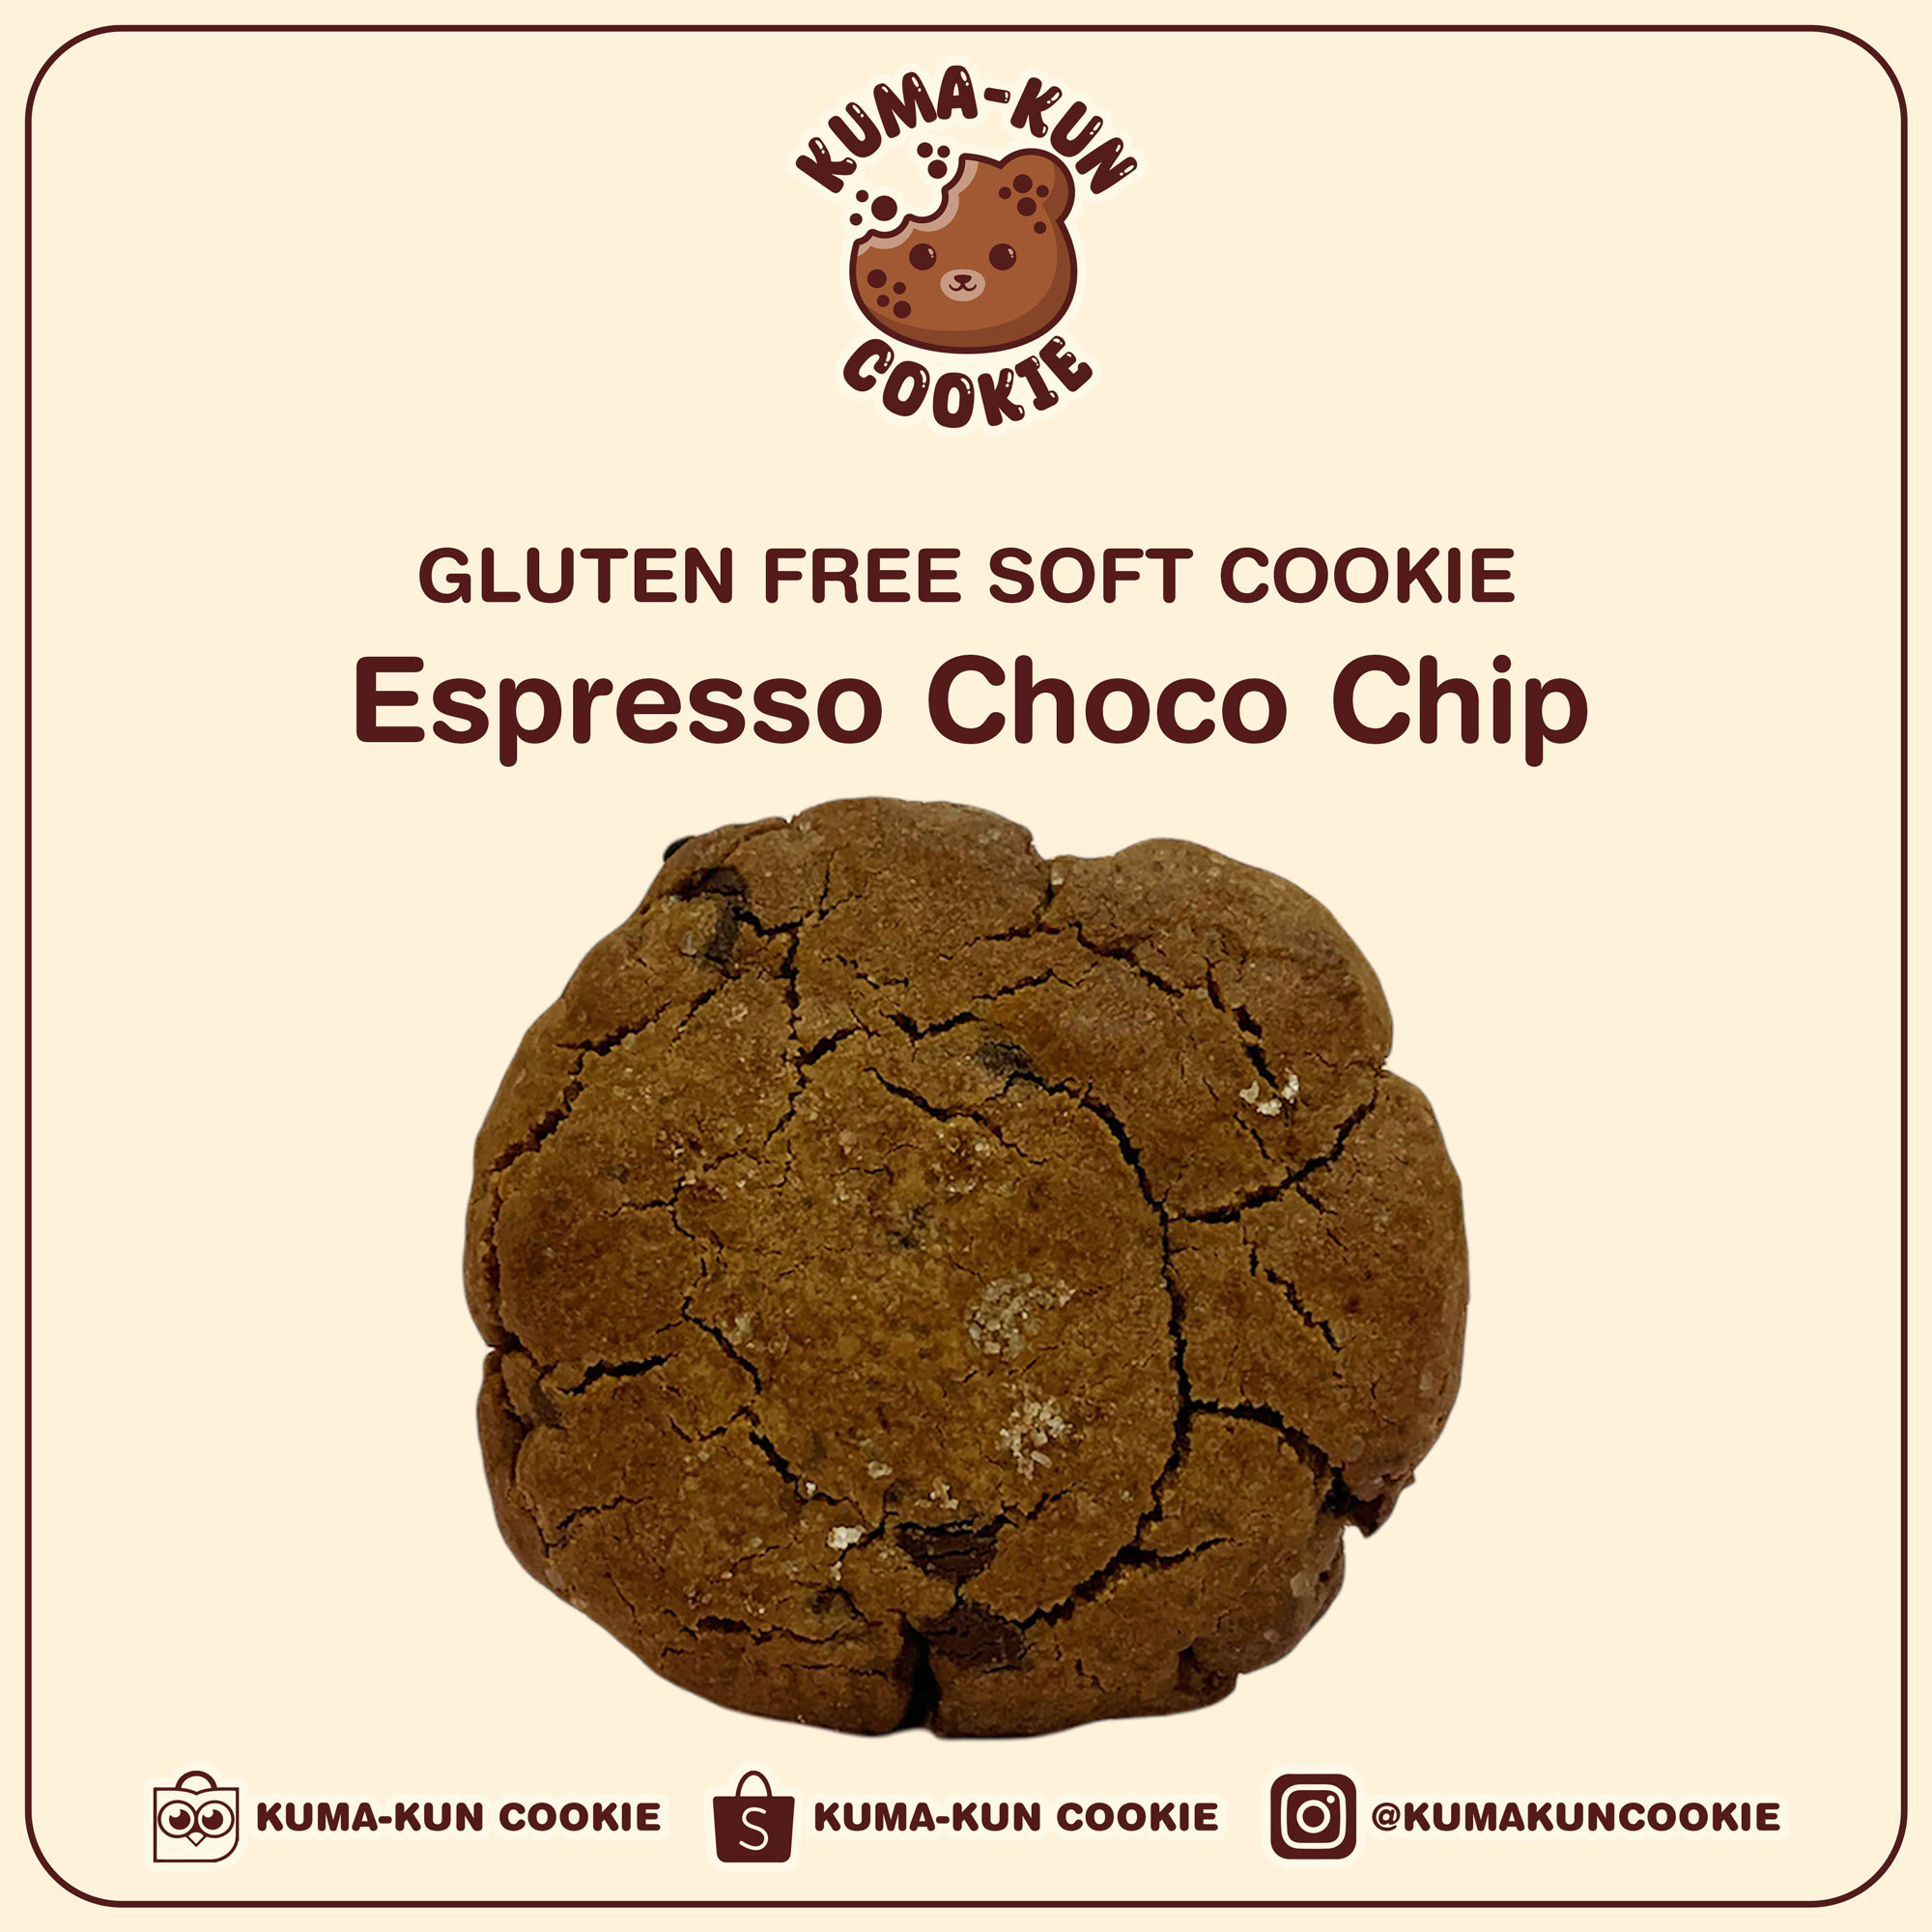 Gluten Free Soft Cookie - Espresso Choco Chip